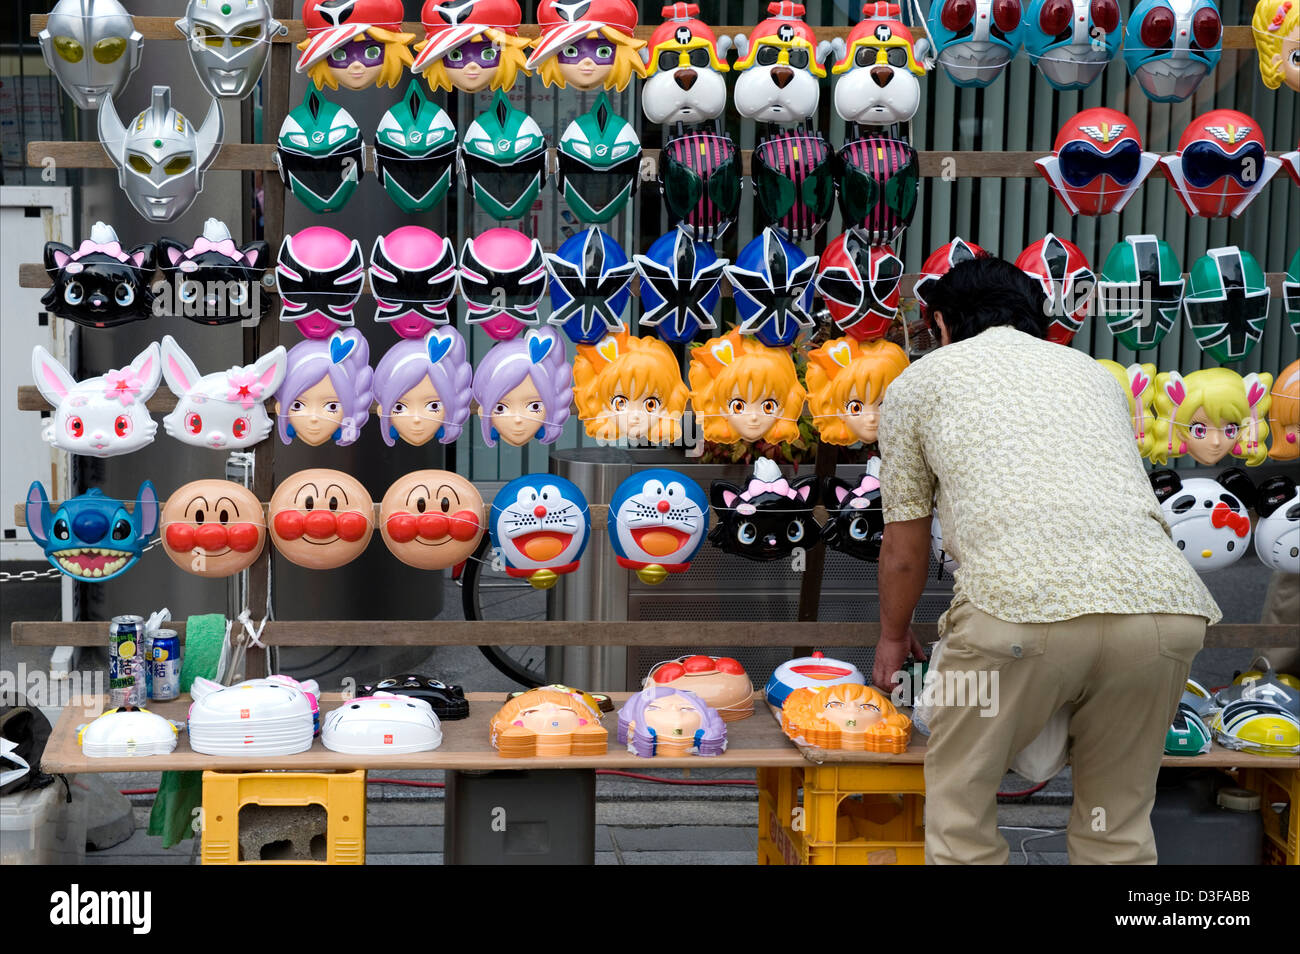 Festival Anbieter verkaufen Kunststoff Anime Gesichtsmasken der beliebten Charaktere einschließlich Anpanman, Doraemon, Ultraman und Power Rangers. Stockfoto